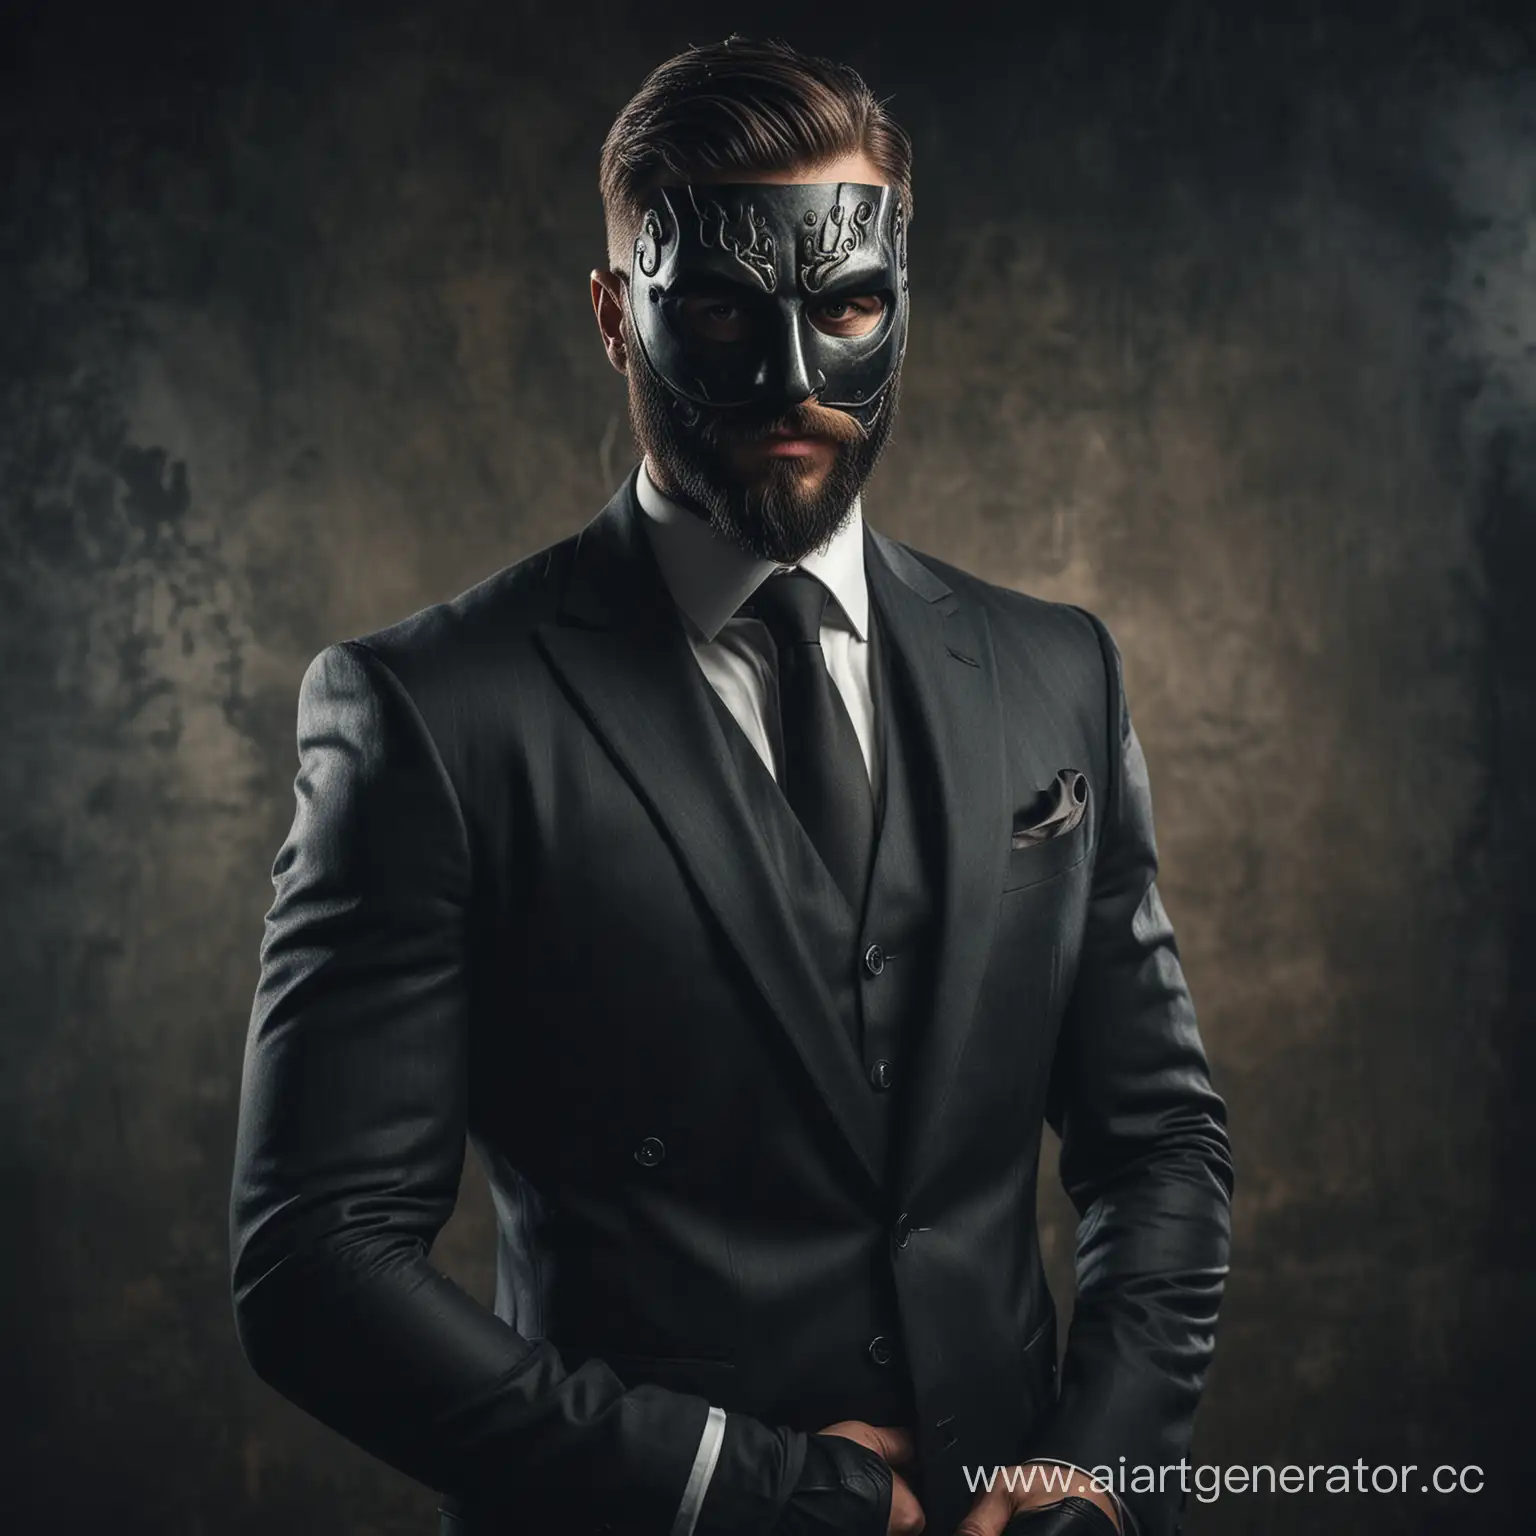 мужик накаченный с бородой в маске анонима в дорогом костюме и мрачной атмосферой